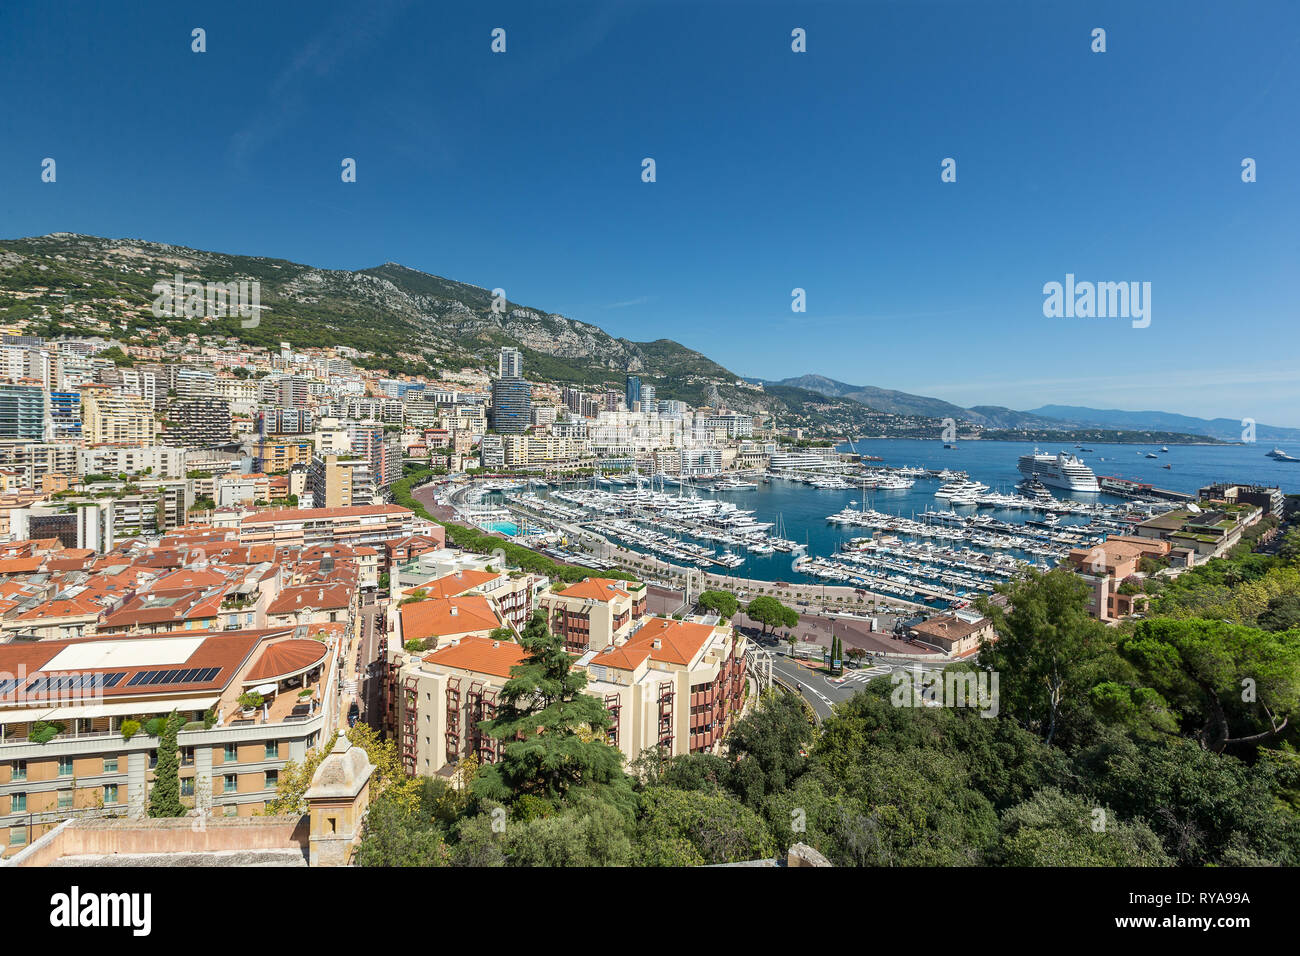 Blick auf den Hafen von oben in Monte Carlo, Monaco, 29.08.2018 Bildnachweis: Mario Hommes / HH-Photography Stock Photo